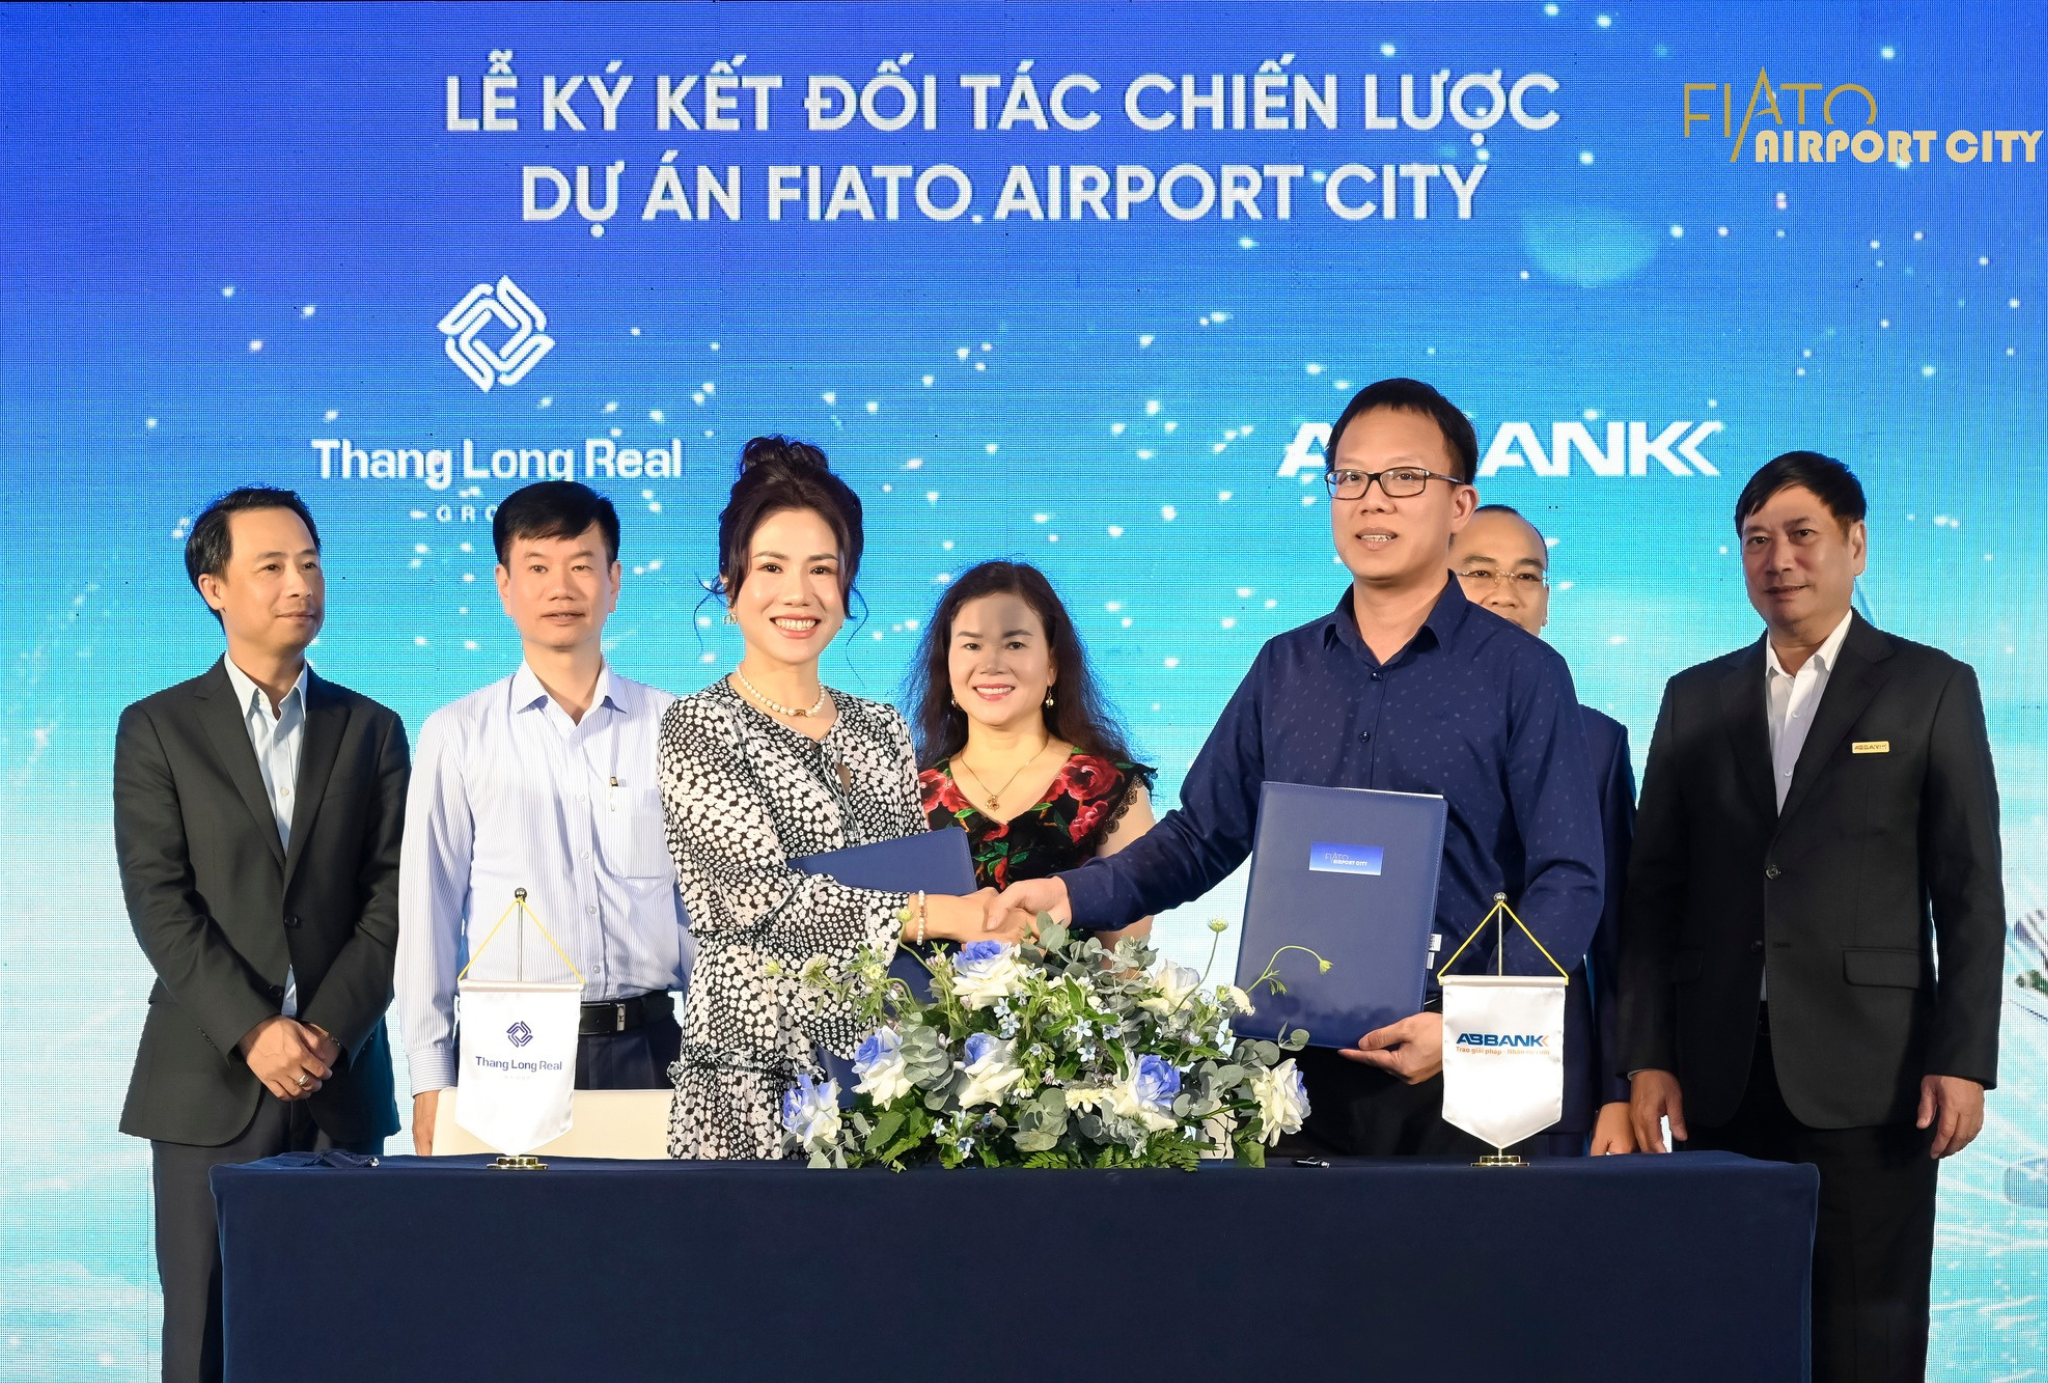 Thang Long Real Group ký kết đối tác chiến lược dự án Fiato Airport City